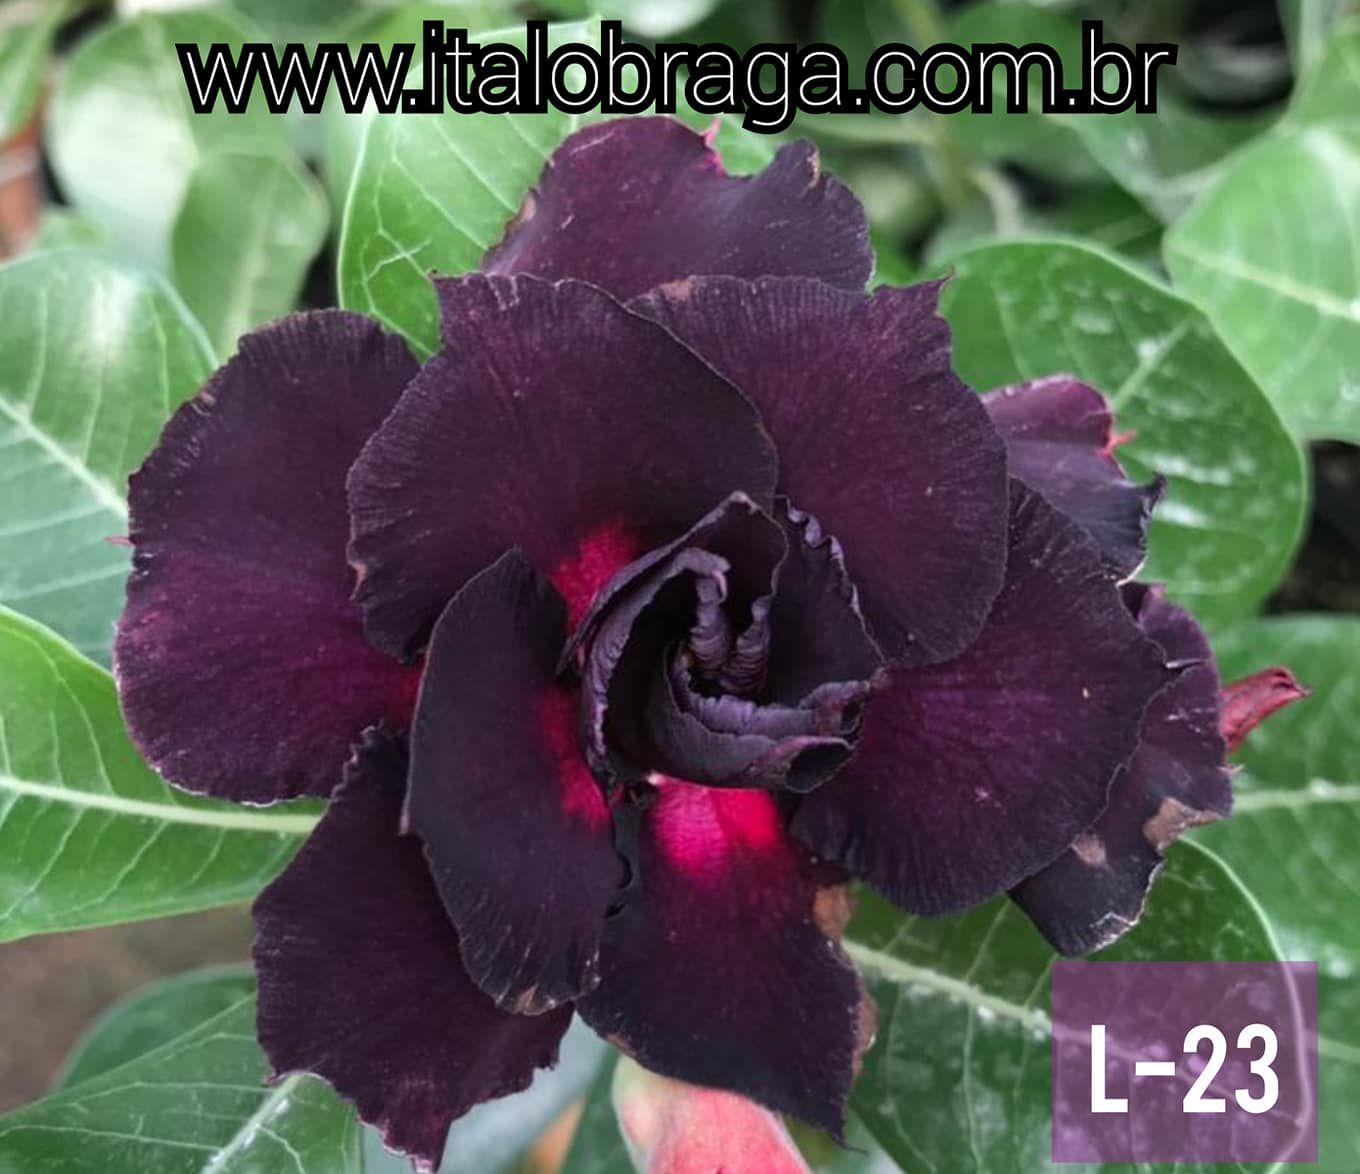 01 Rosa Do Deserto Enxerto Roxa Tripla L-23 - ItaloBragaRD - Planta e Flor  Natural - Magazine Luiza